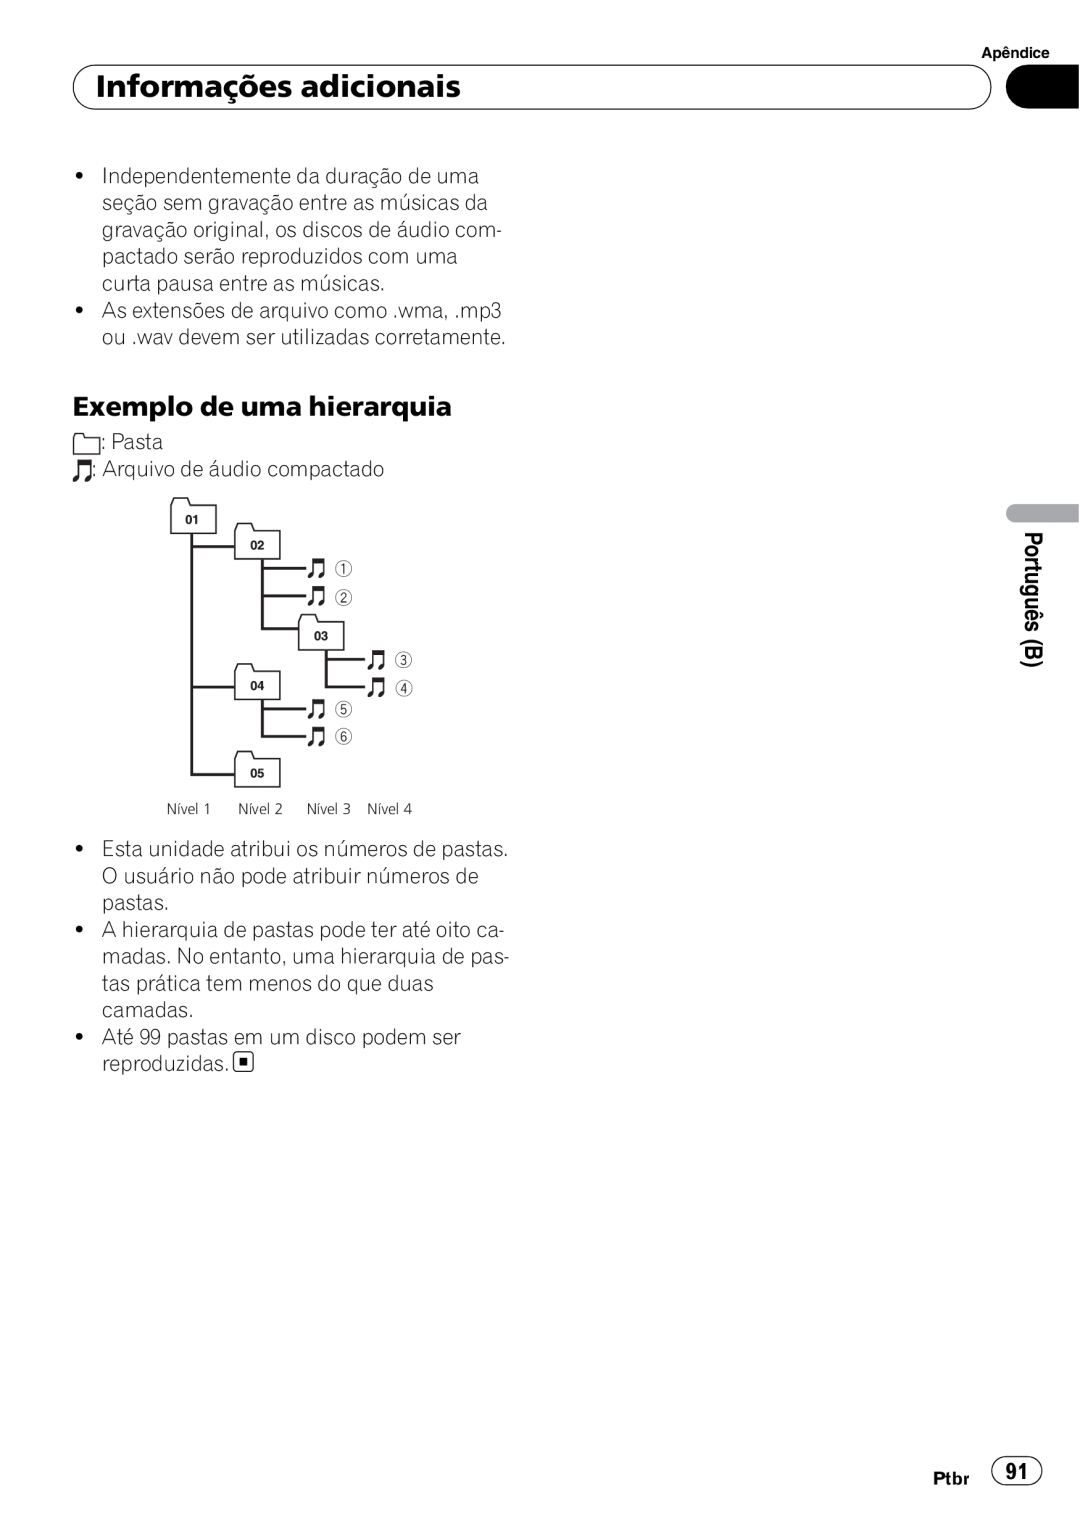 Pioneer DEH-3050UB operation manual Exemplo de uma hierarquia, Informações adicionais 